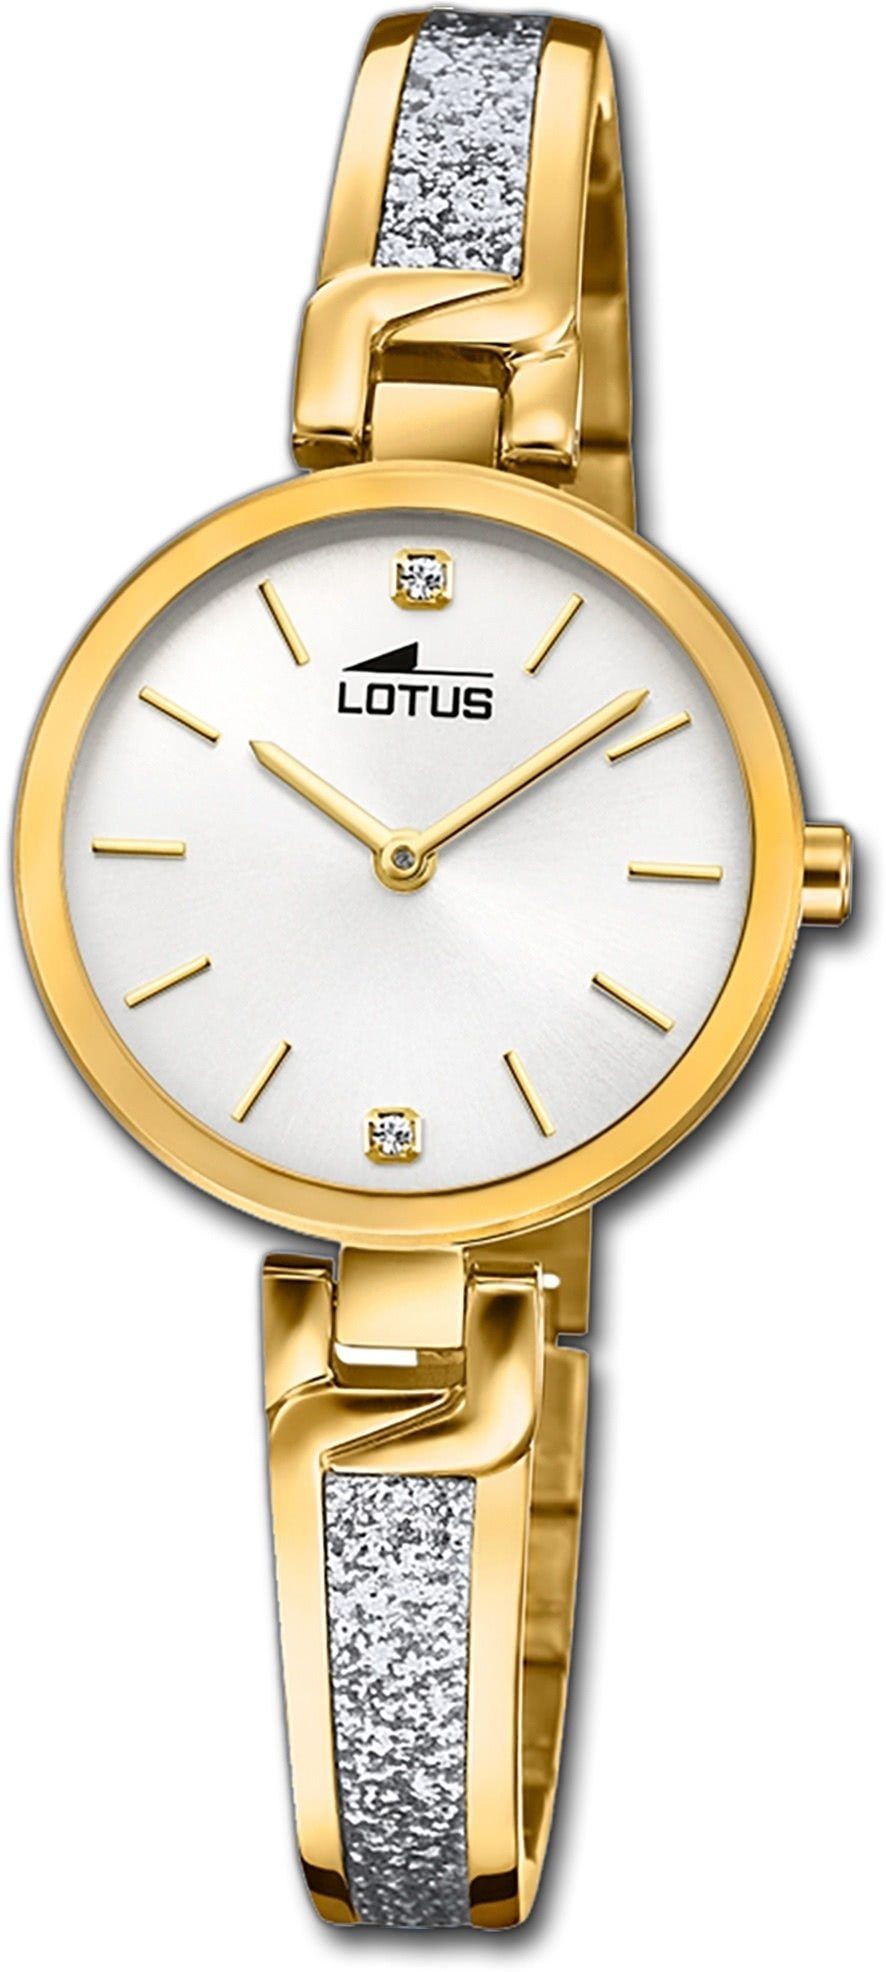 Damen Uhren Lotus Quarzuhr D2UL18723/1 Lotus Edelstahl Damen Uhr 18723/1, Damenuhr mit Edelstahlarmband, rundes Gehäuse, klein (